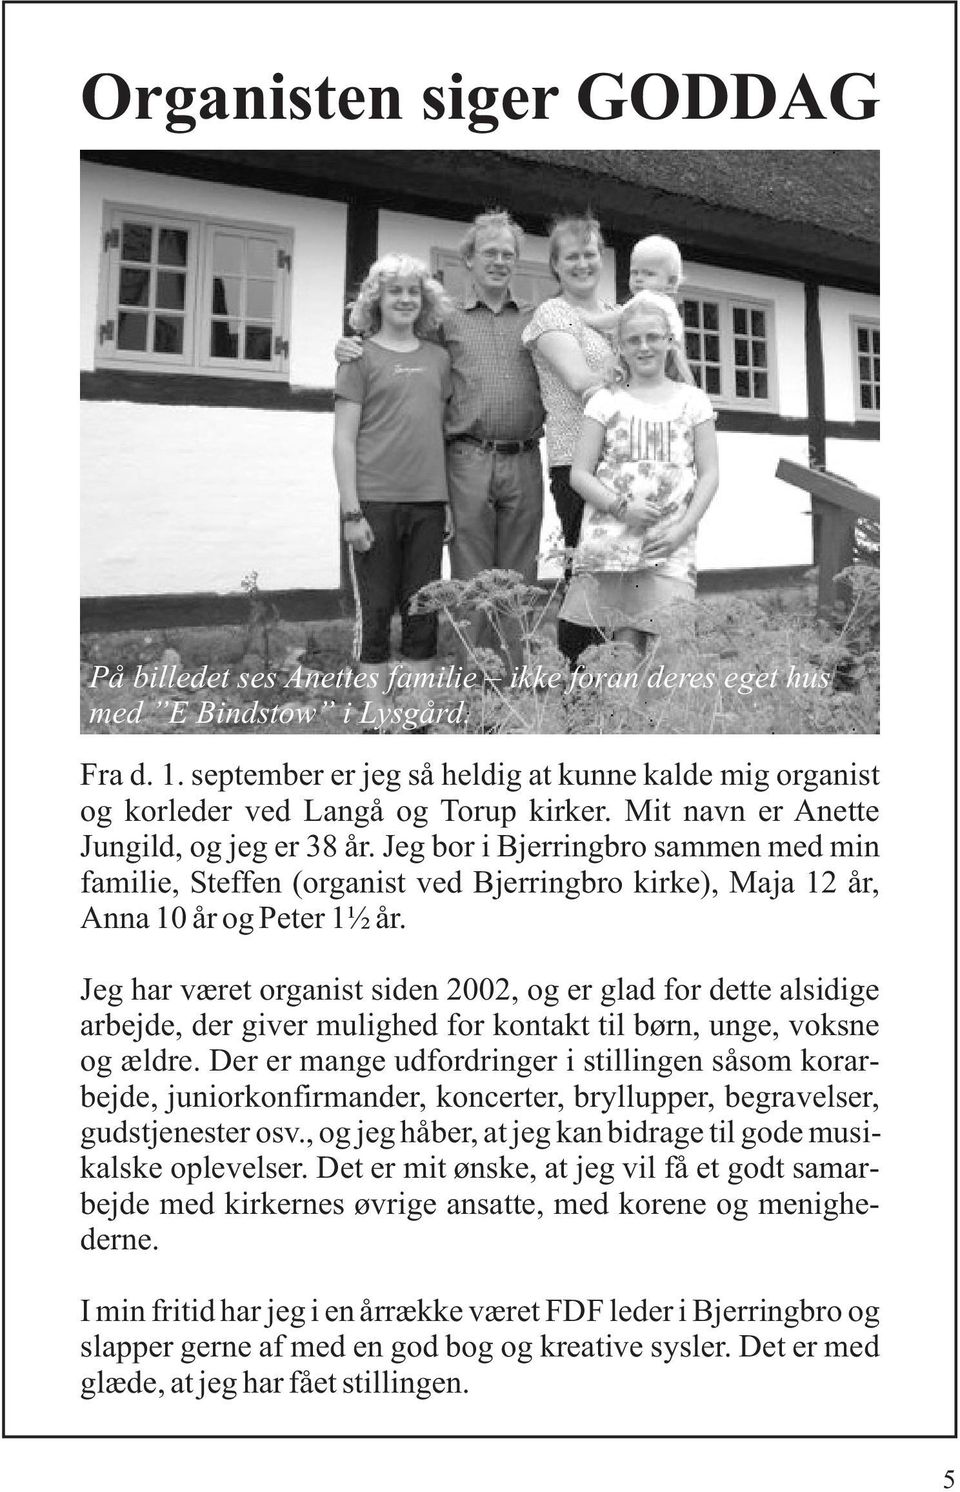 Jeg bor i Bjerringbro sammen med min familie, Steffen (organist ved Bjerringbro kirke), Maja 12 år, Anna 10 år og Peter 1½ år.